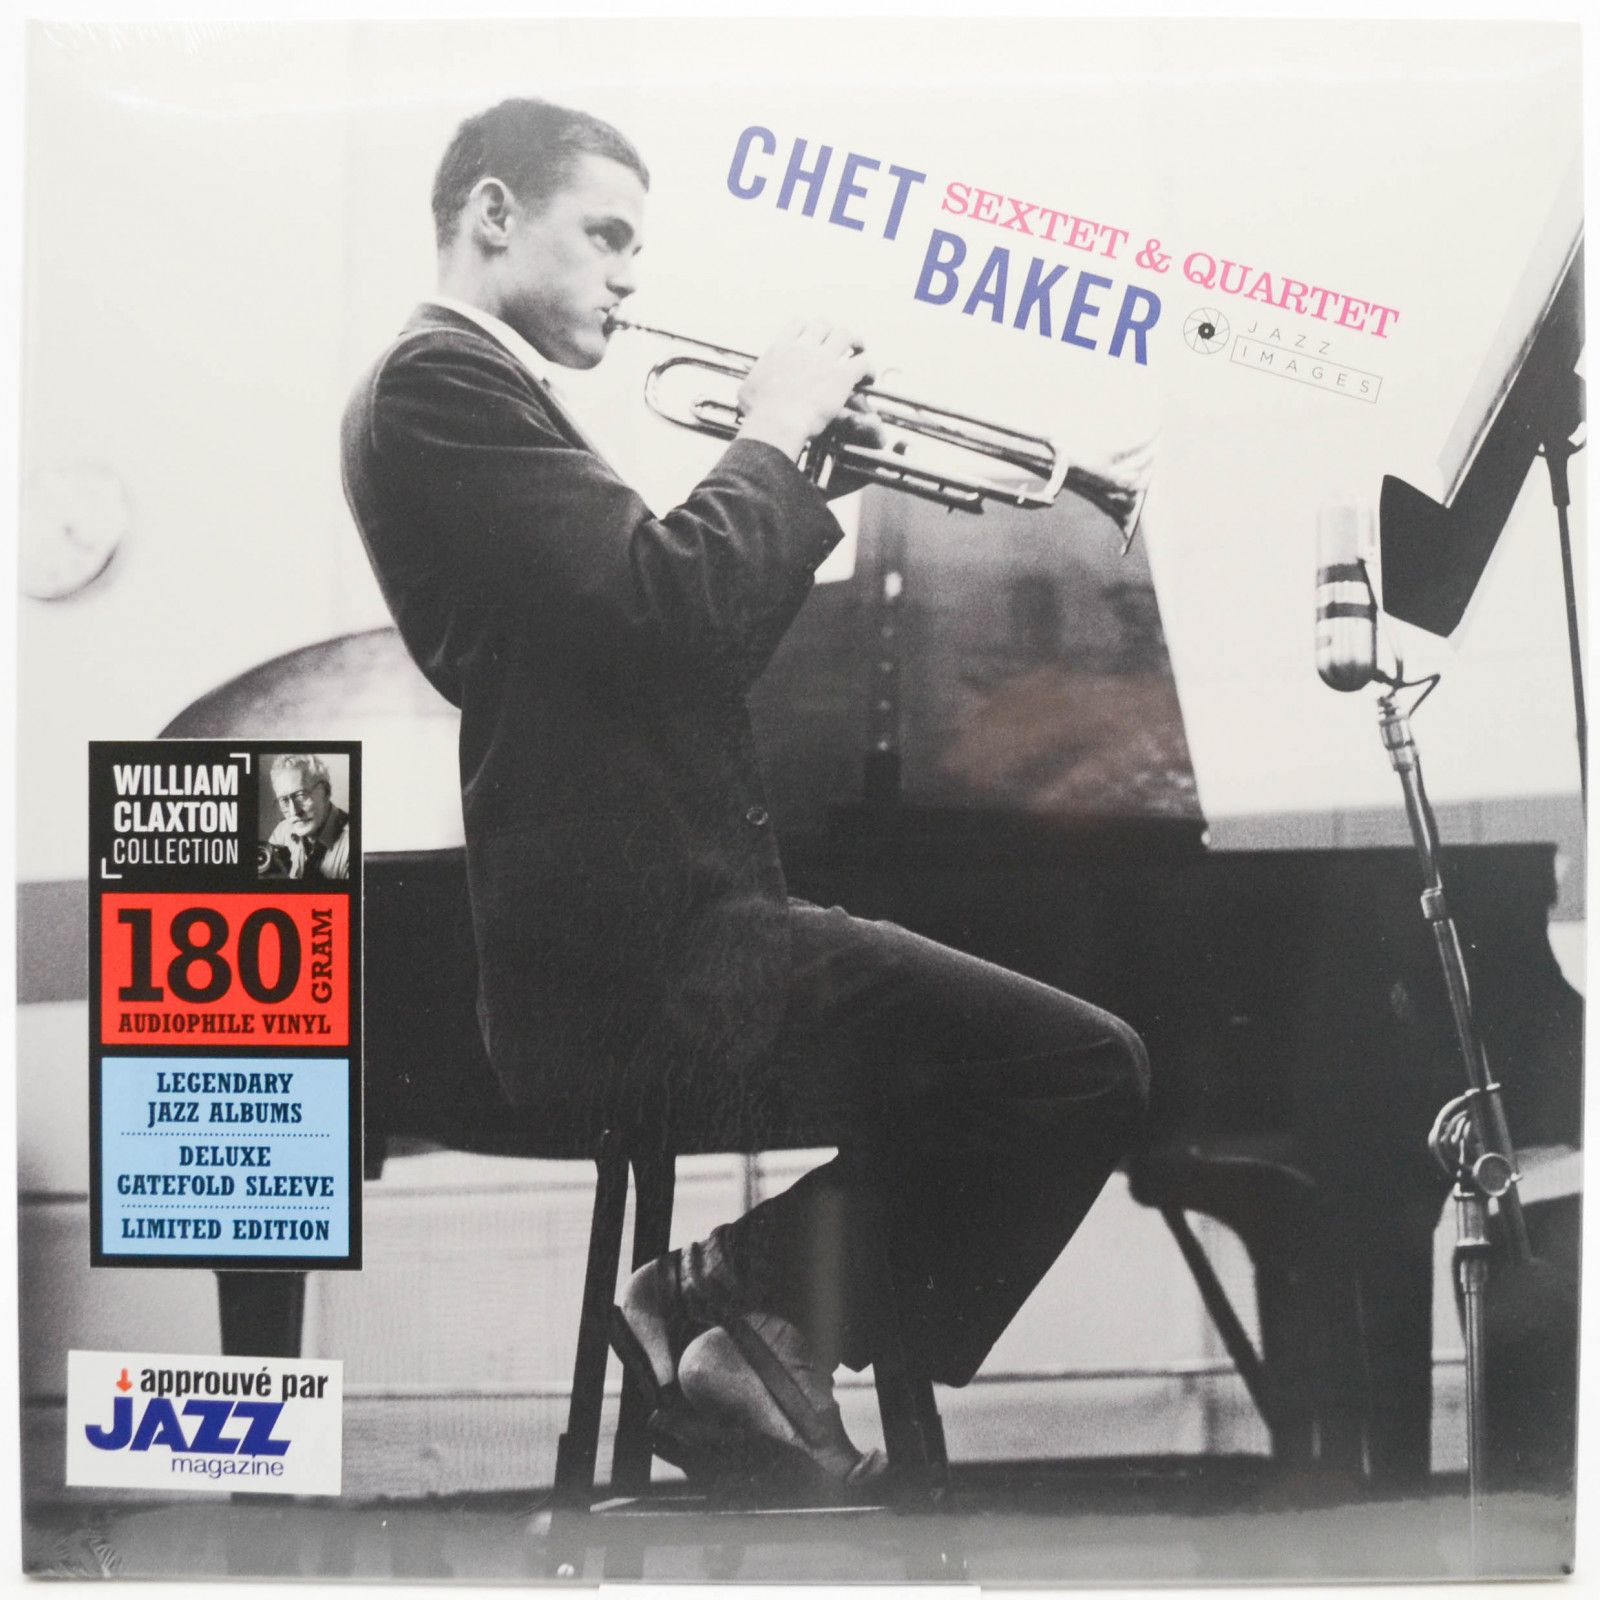 Chet Baker Sextet & Quartet — Chet Baker Sextet & Quartet, 1960